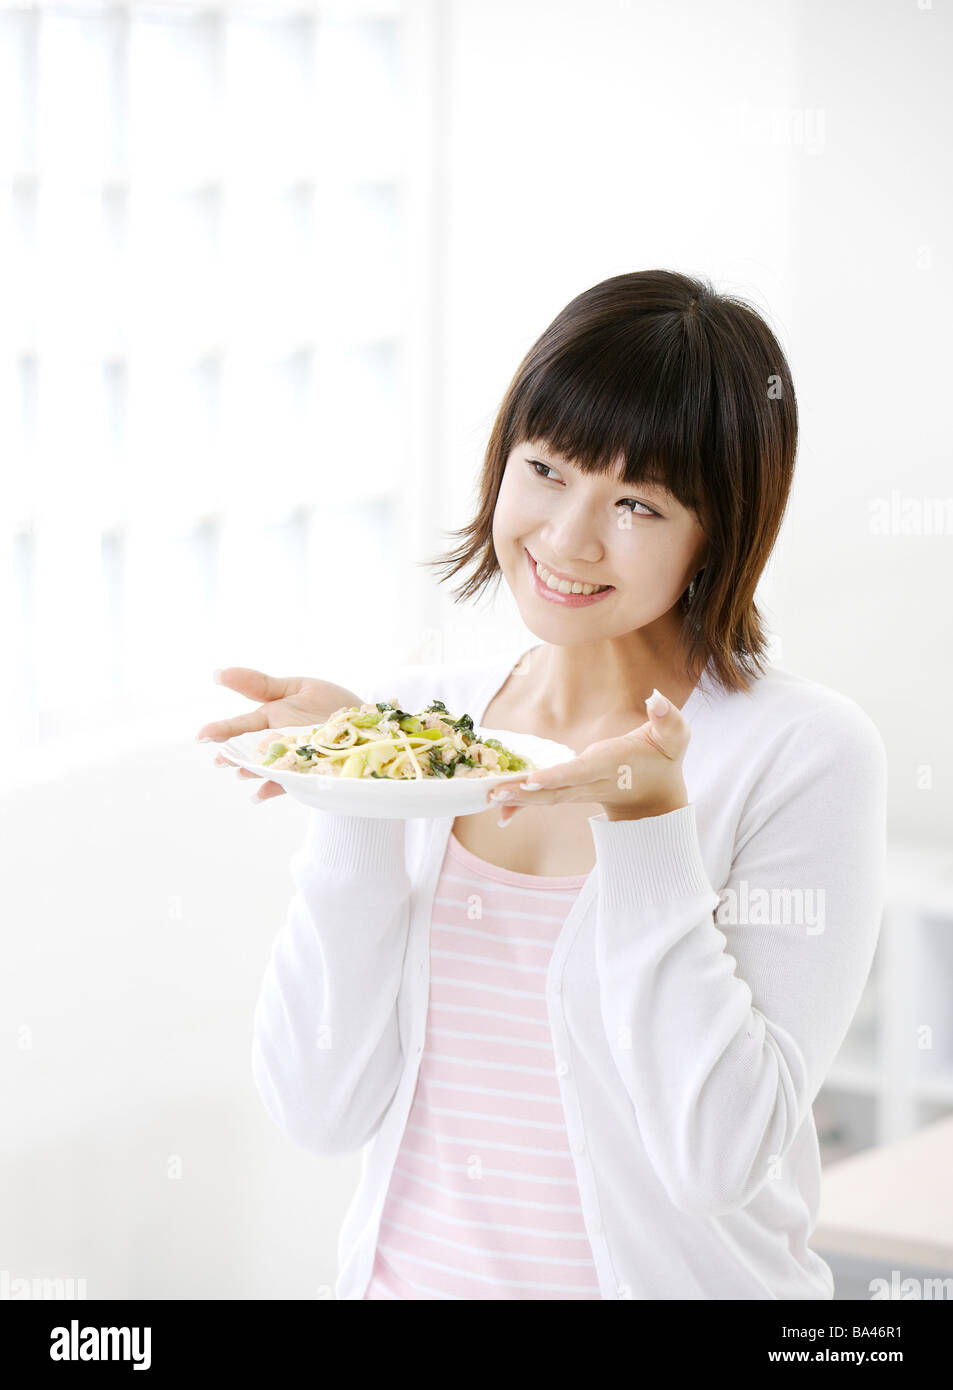 Junge Frau hält eine Gericht Lächeln, wegschauen Stockfoto